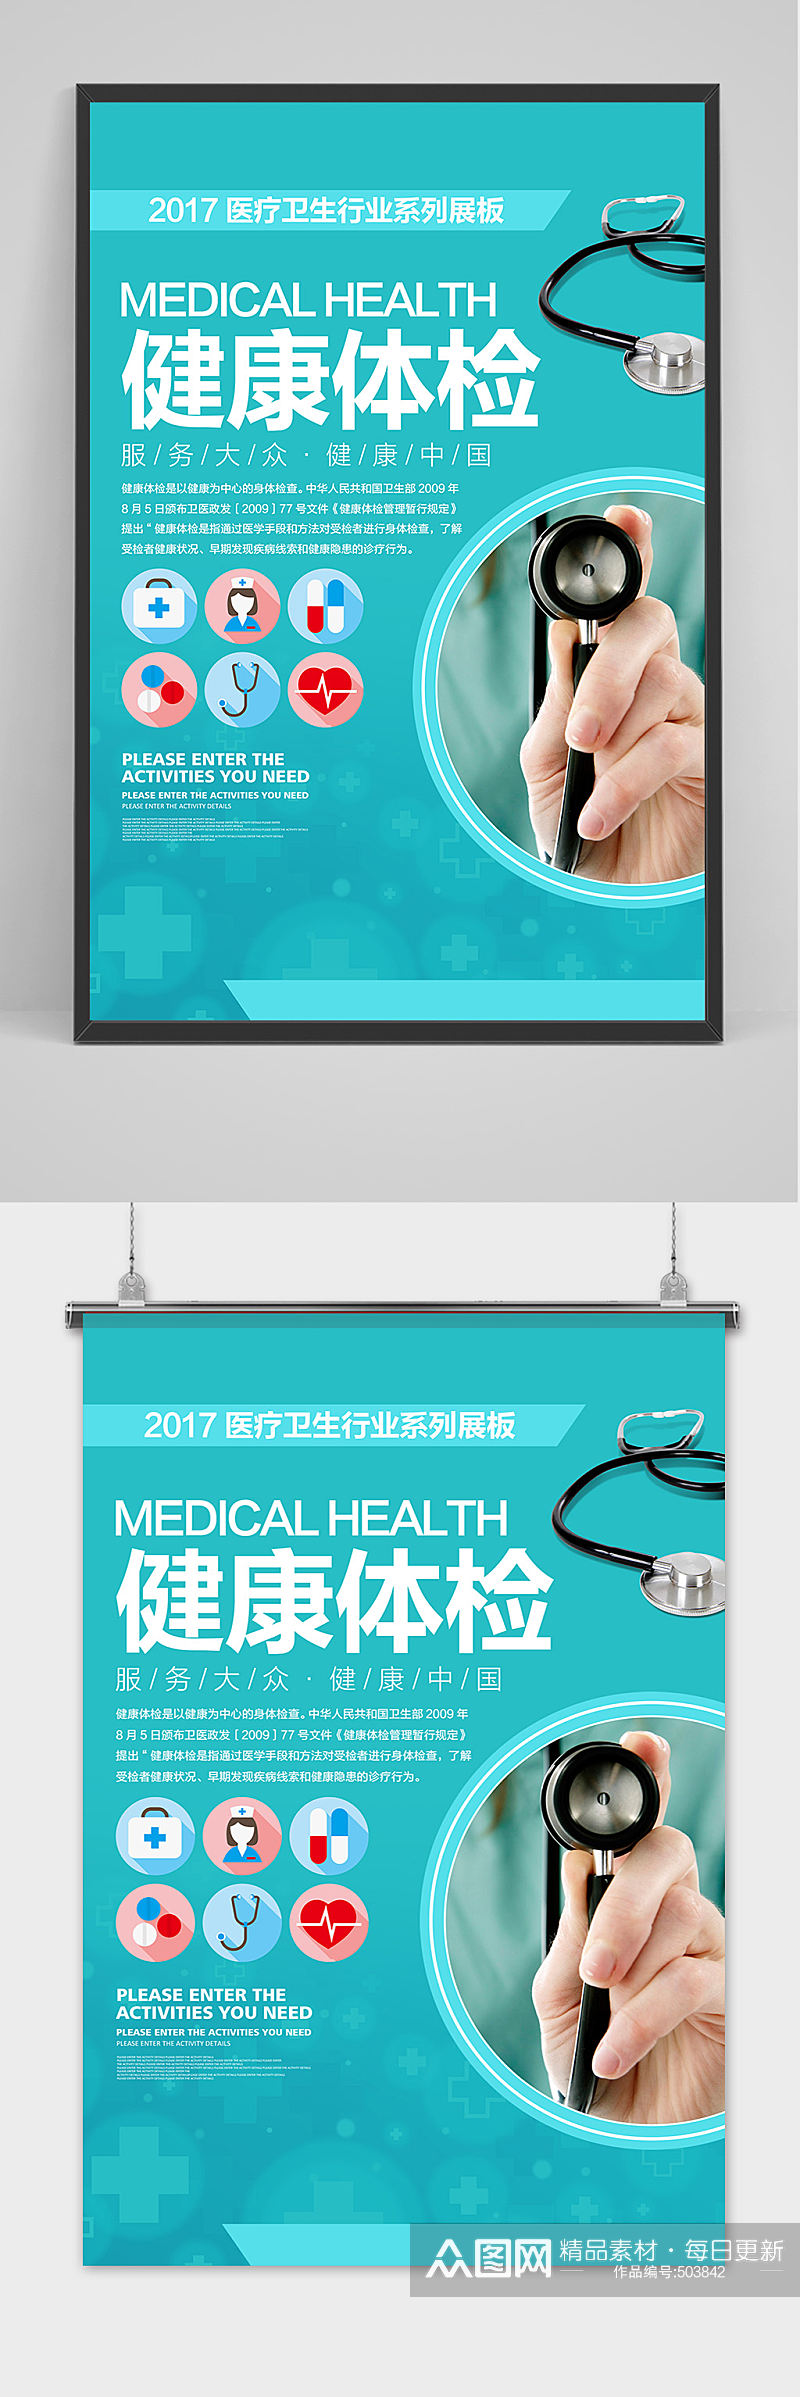 蓝色简约医疗卫生医学健康体检宣传海报素材